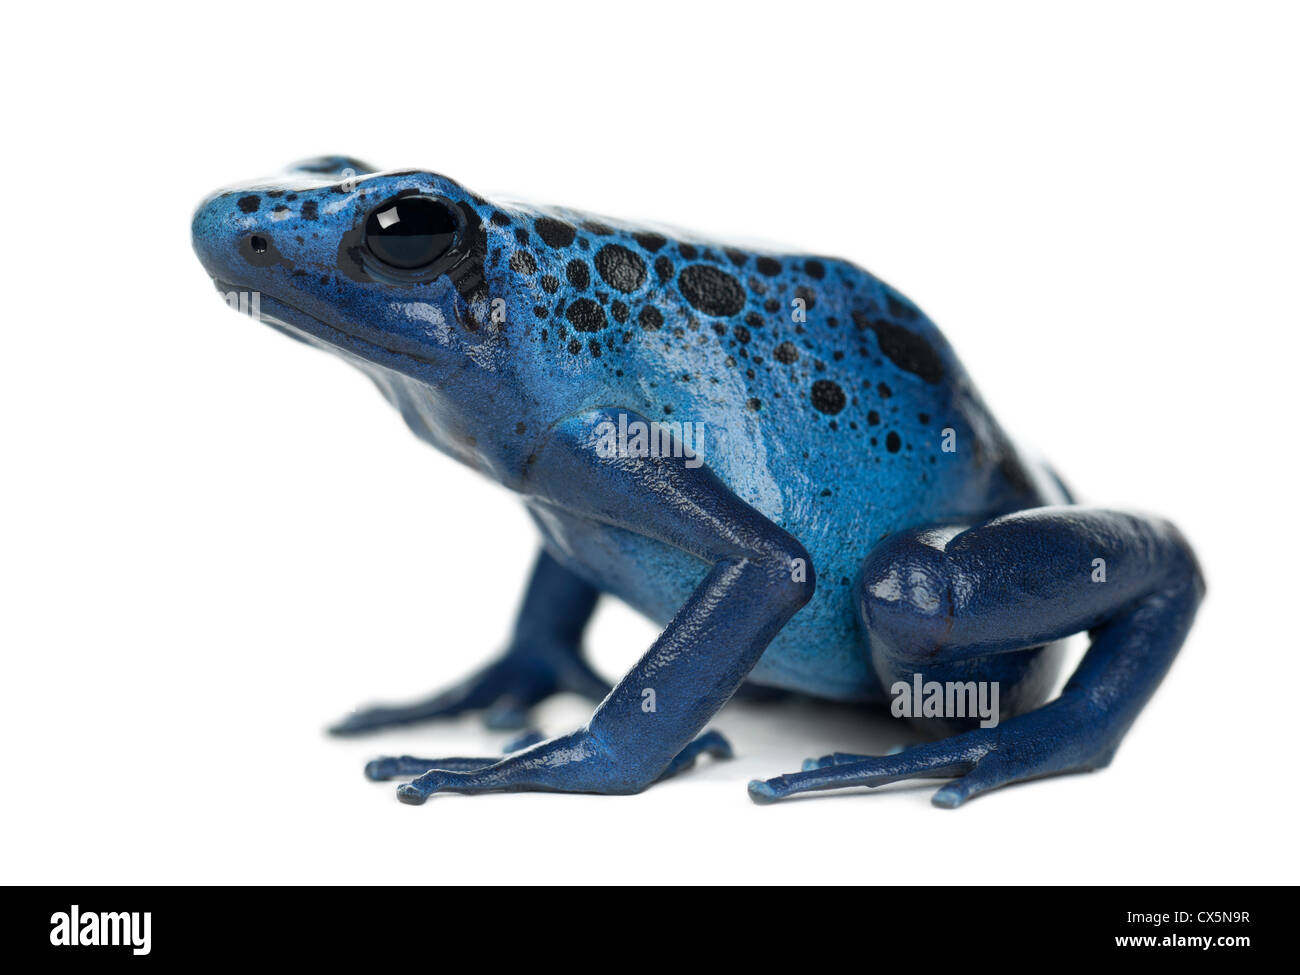 Blue Poison Dart Frog, Dendrobates azureus, against white background Banque D'Images